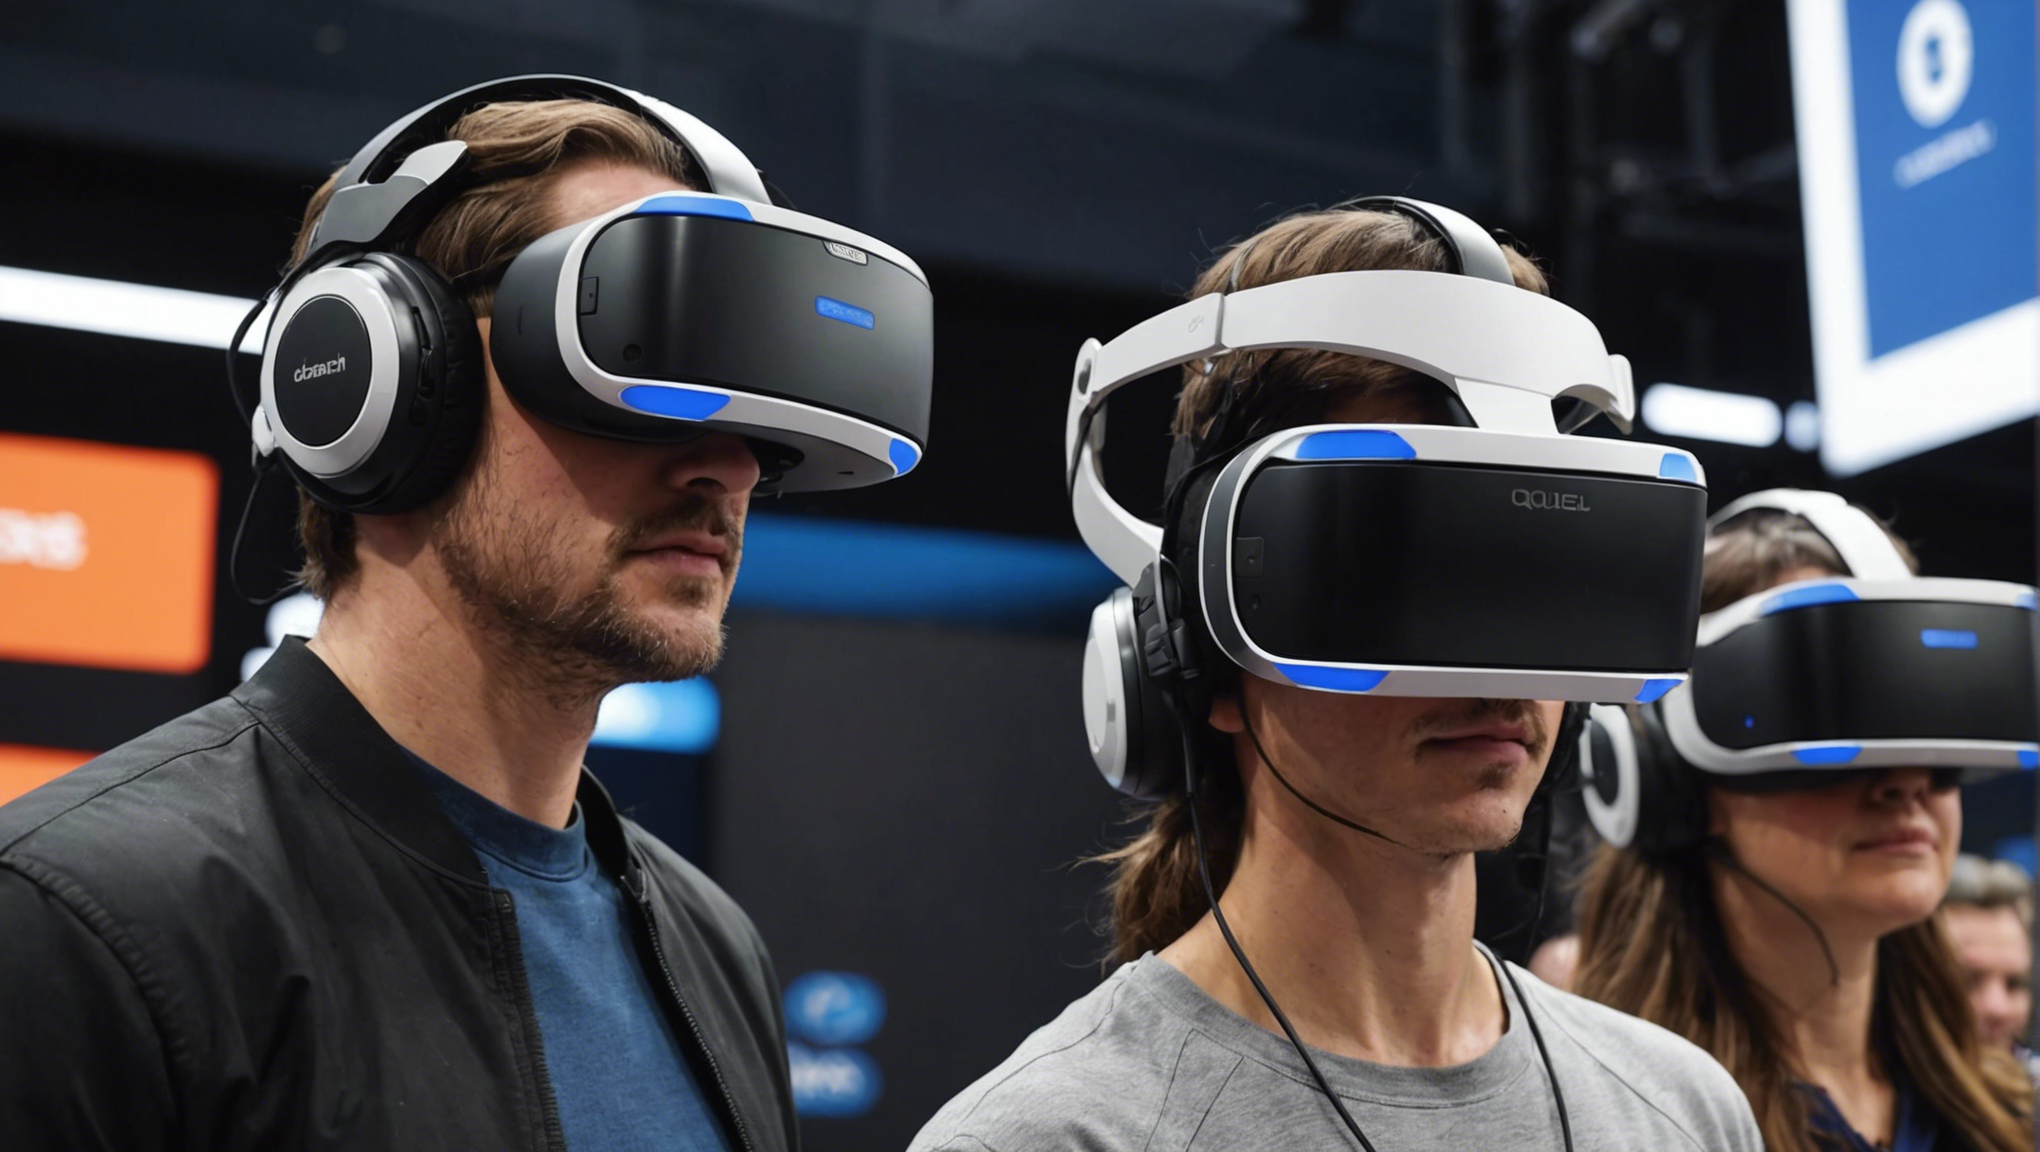 découvrez les meilleurs casques de réalité virtuelle du marché et plongez dans des expériences immersives avec notre sélection de produits haut de gamme.